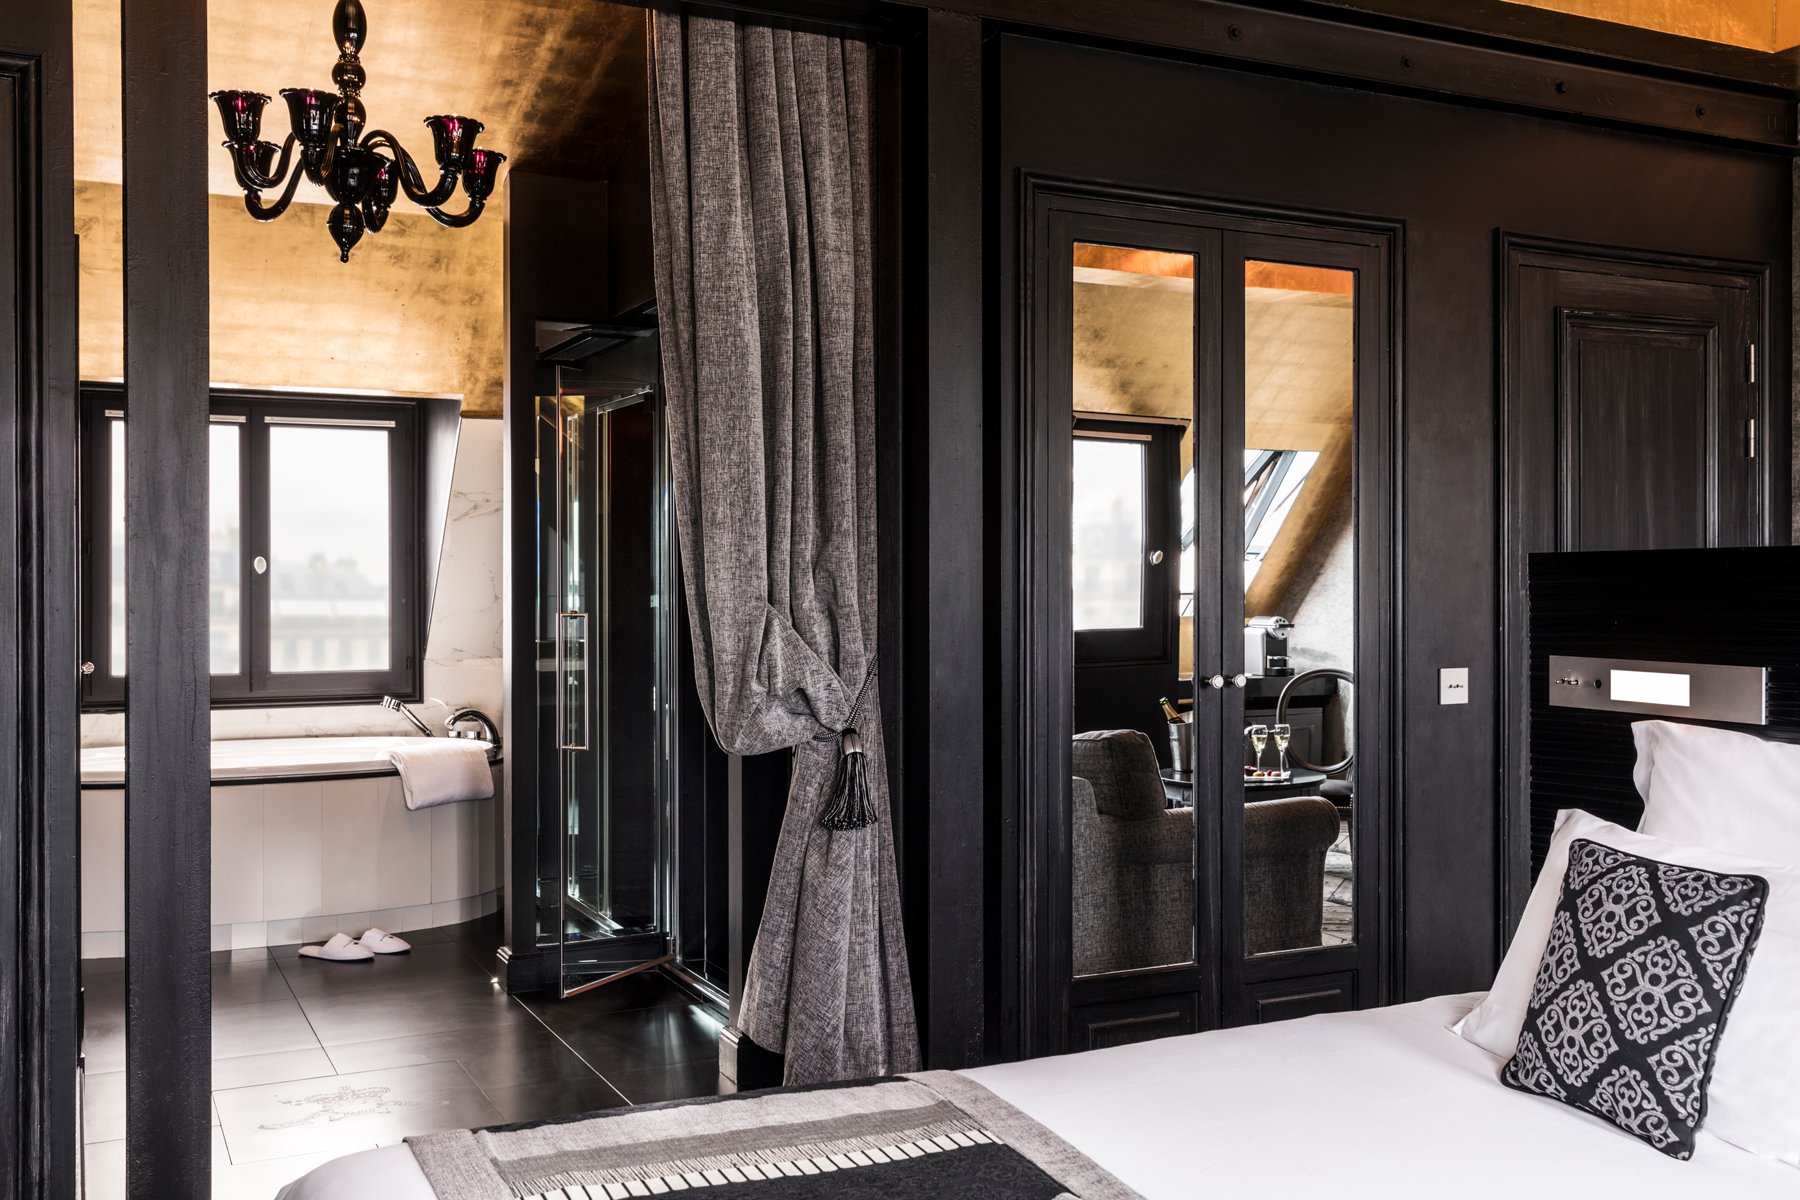 Maison Albar Hotels Le Champs-Elysées Suite with private jacuzzi